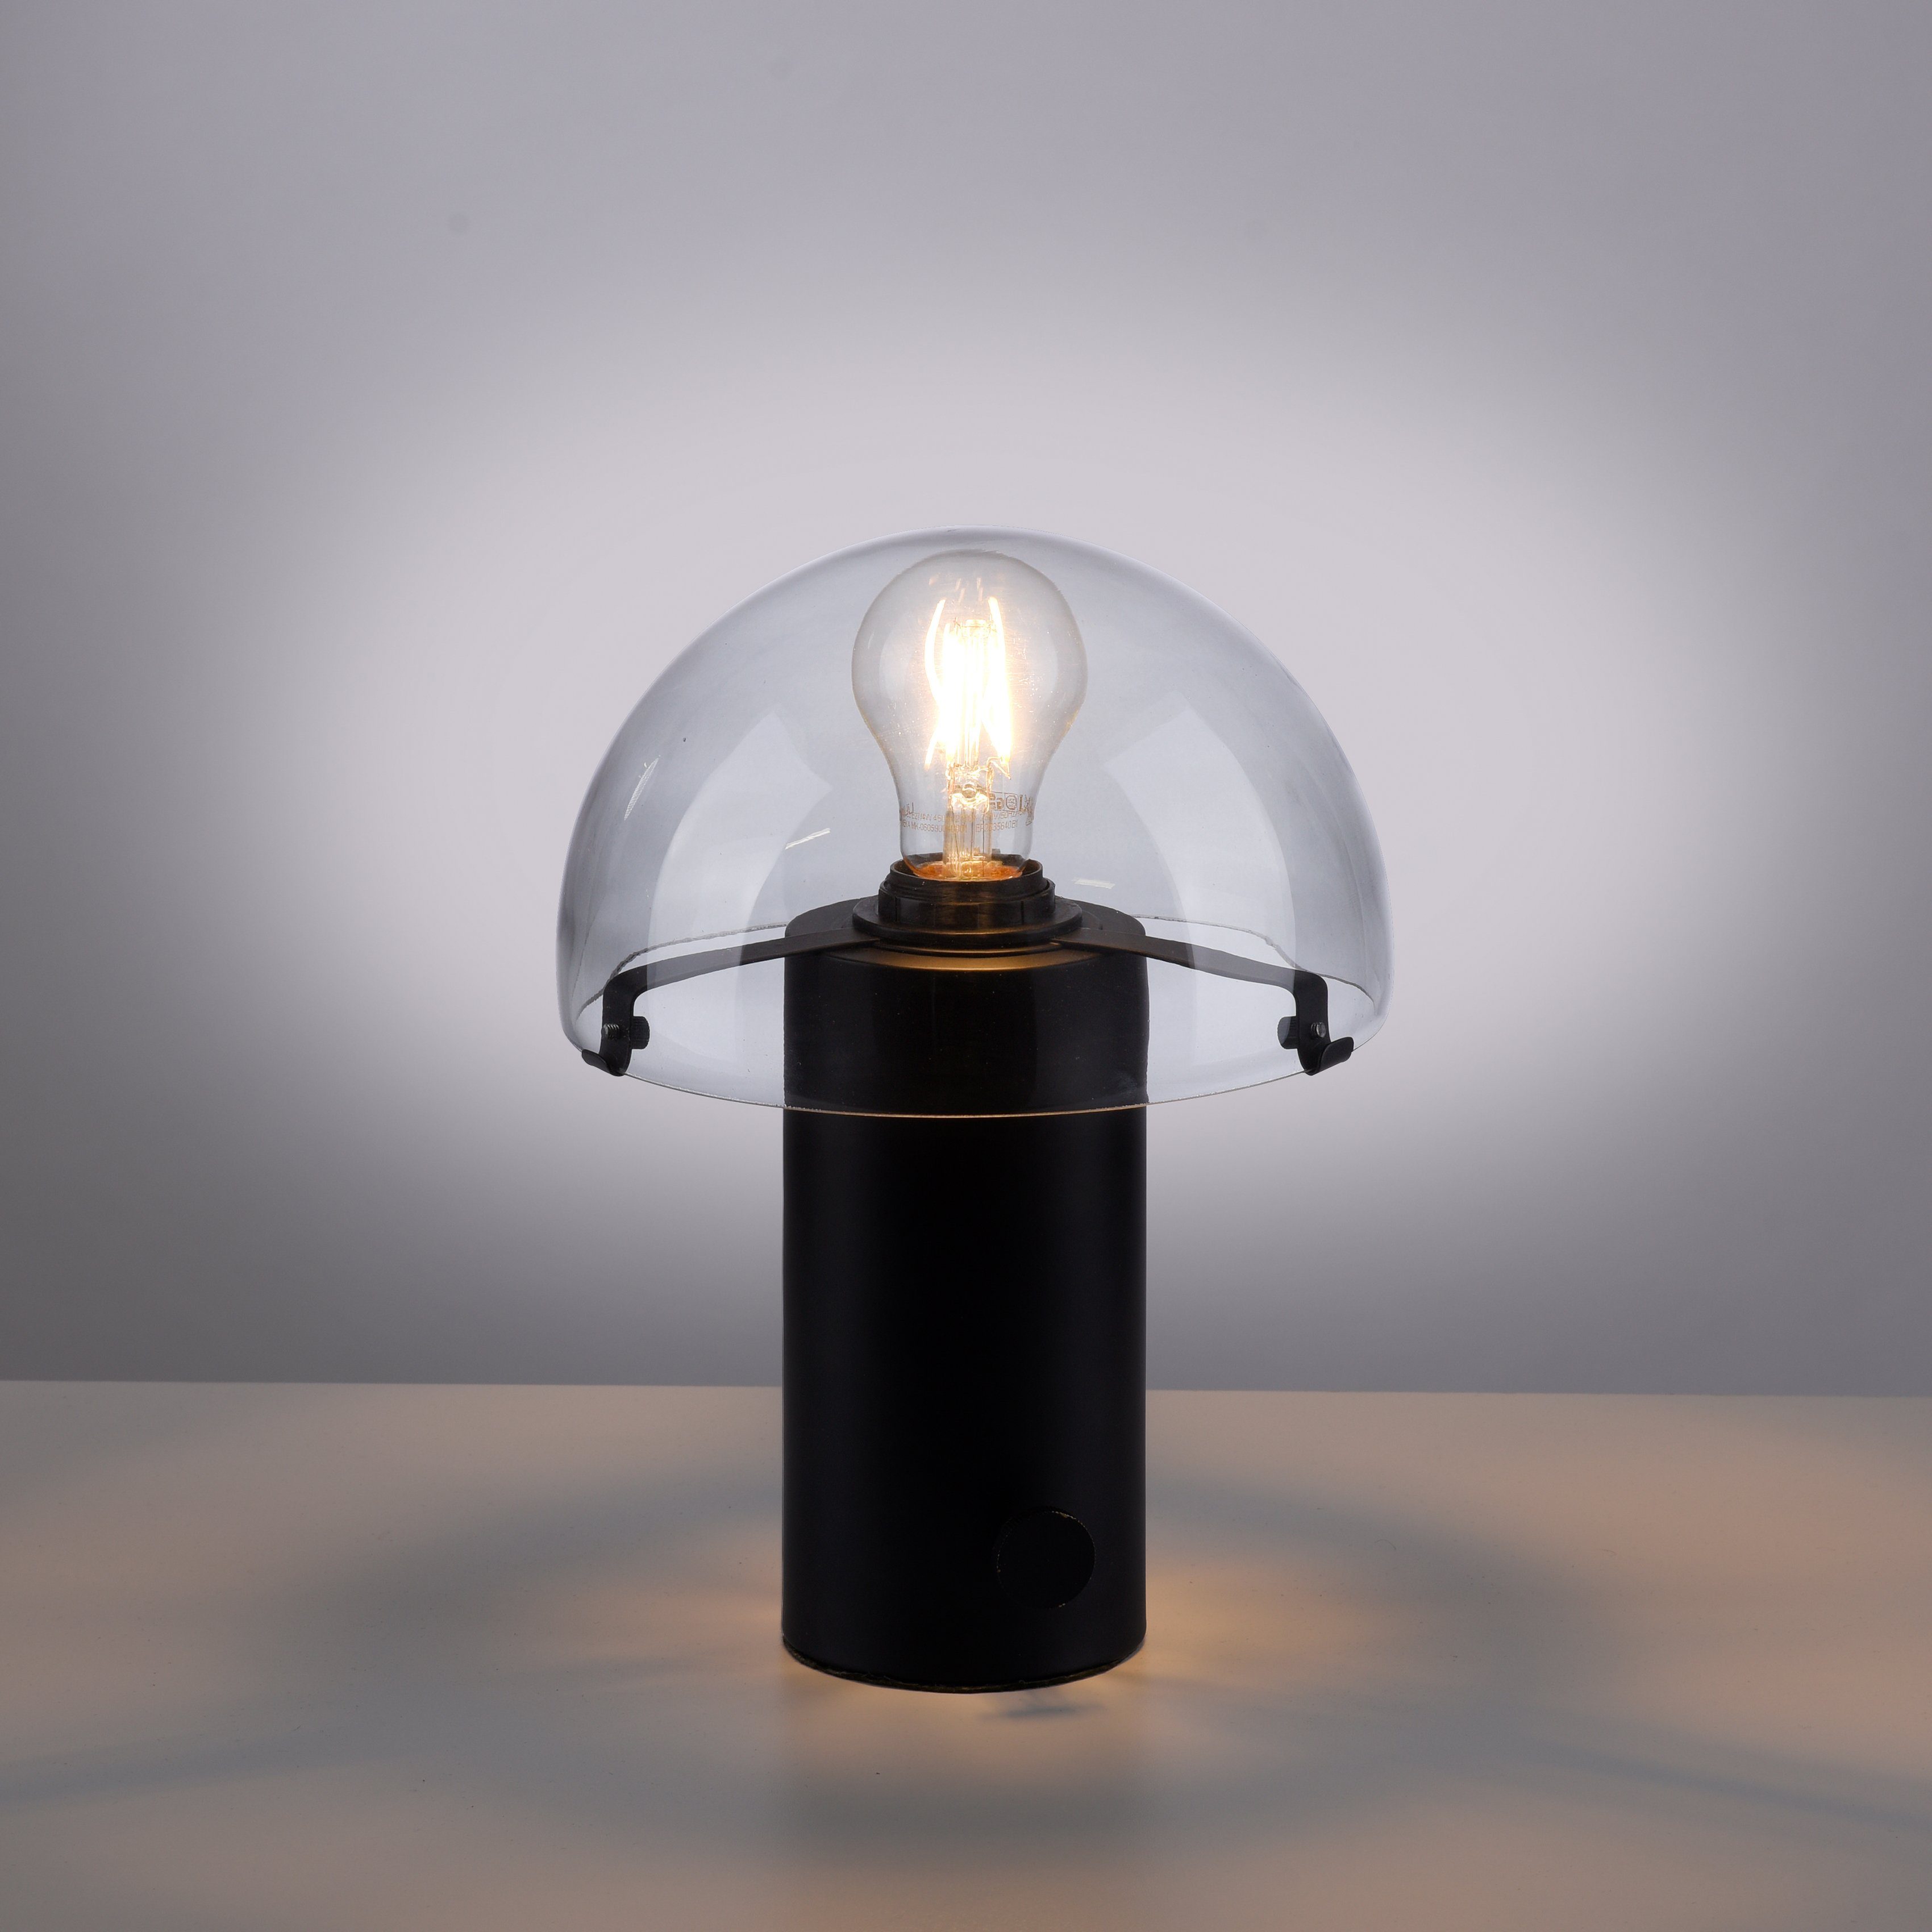 Tischlampe Pilzlampe Leuchtmittel, schwarz/rauchglas Drehschalter, ohne andas E27, Ein-/Ausschalter, Tischleuchte Skickja, skandinavisch